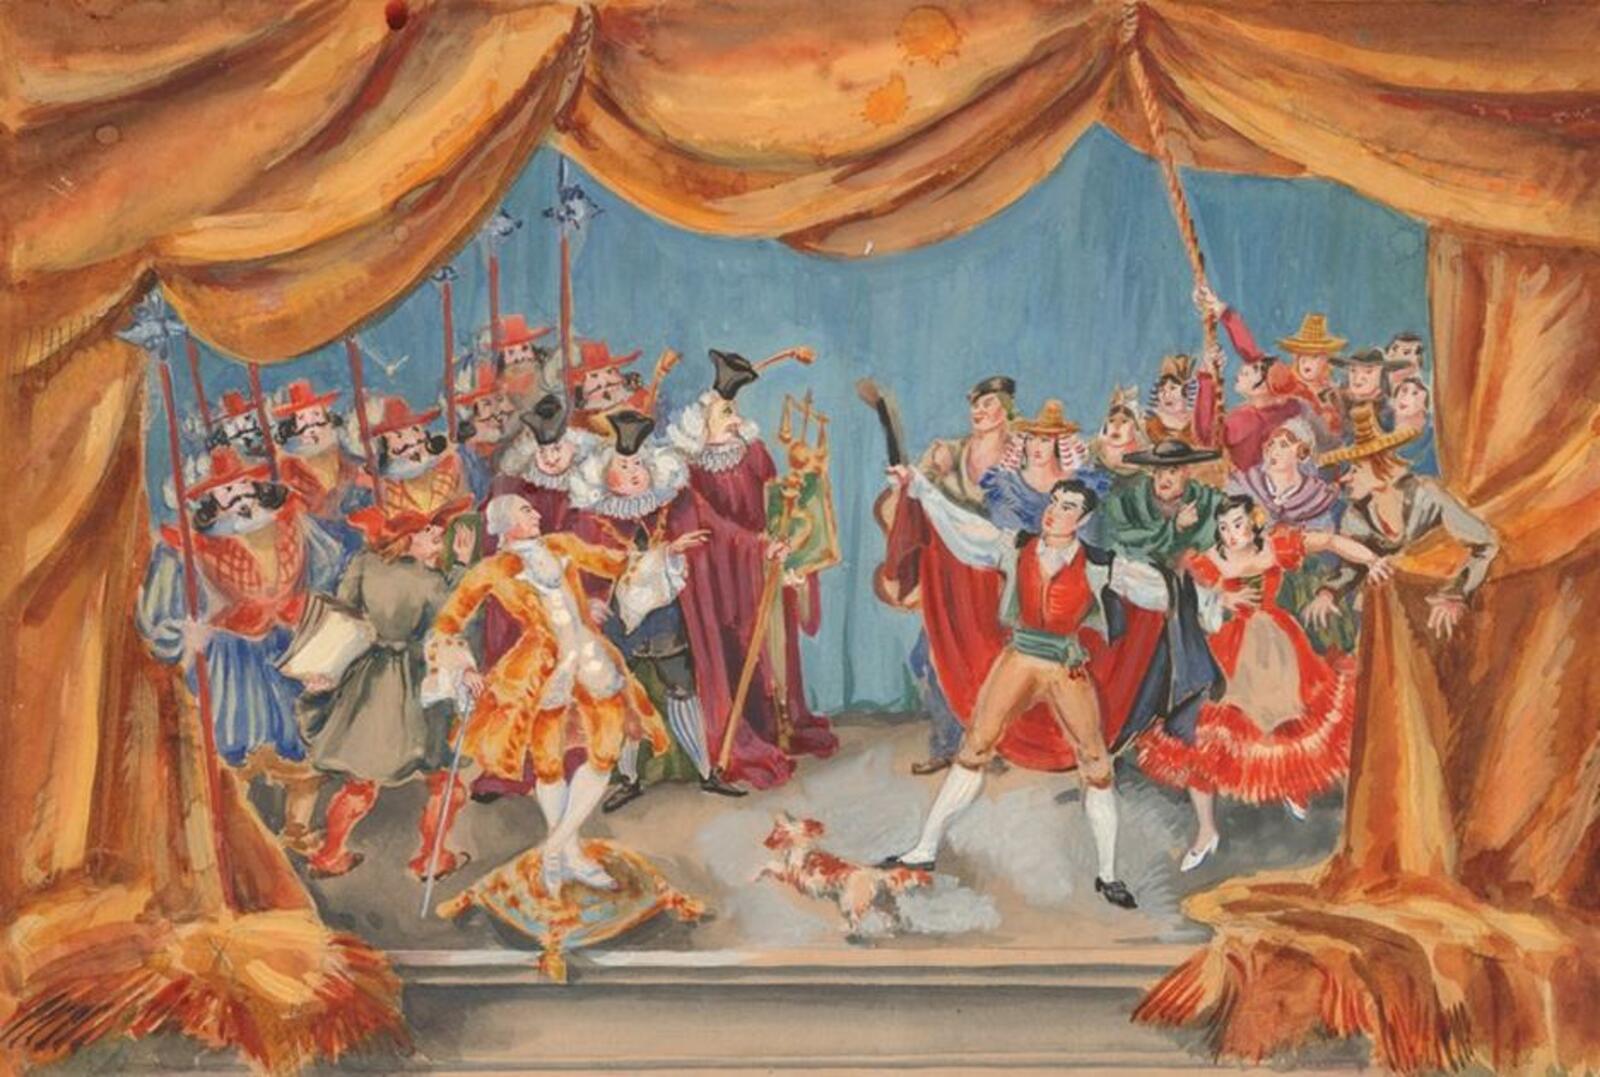 Музыкальный театр май. Свадьба Фигаро Моцарт. Опера свадьба Фигаро Моцарт. Свадьба Фигаро (1786), опера. Мо́царт опера́ судьба Фигорова.